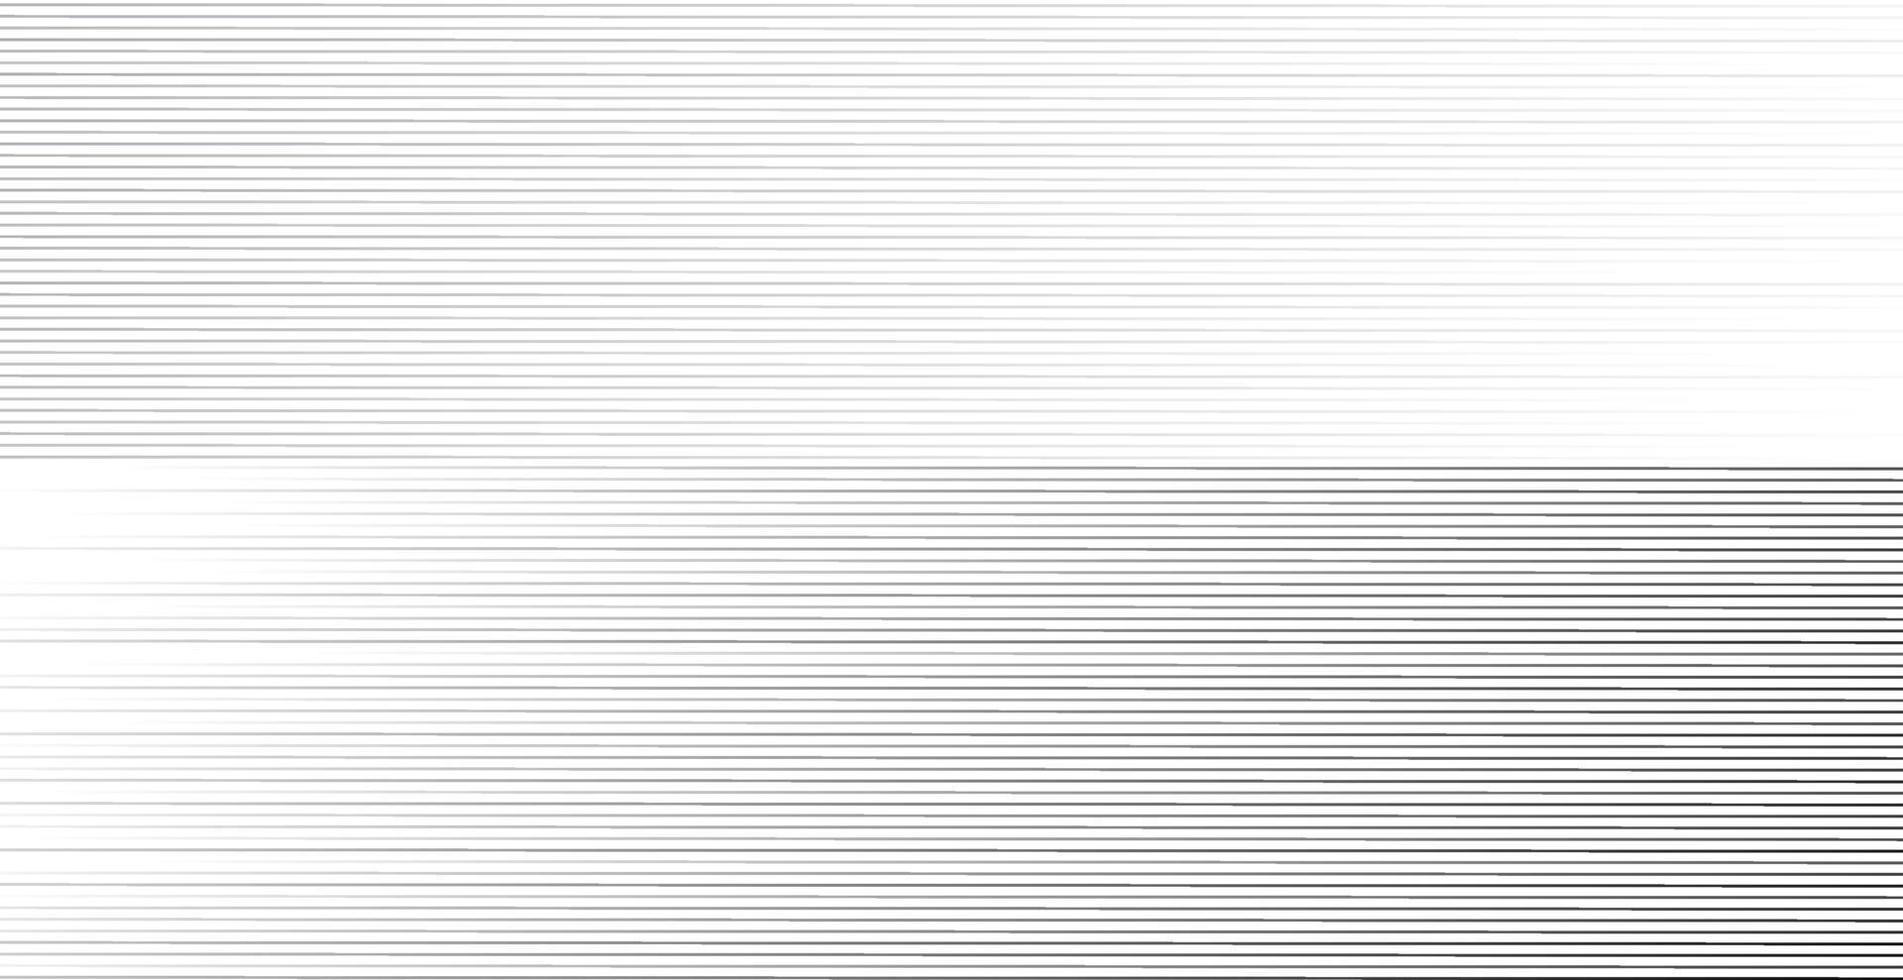 abstrakter Hintergrund, Vektorschablone für Ihre Ideen, monochromatische Linienbeschaffenheit, gewellte Linienbeschaffenheit vektor